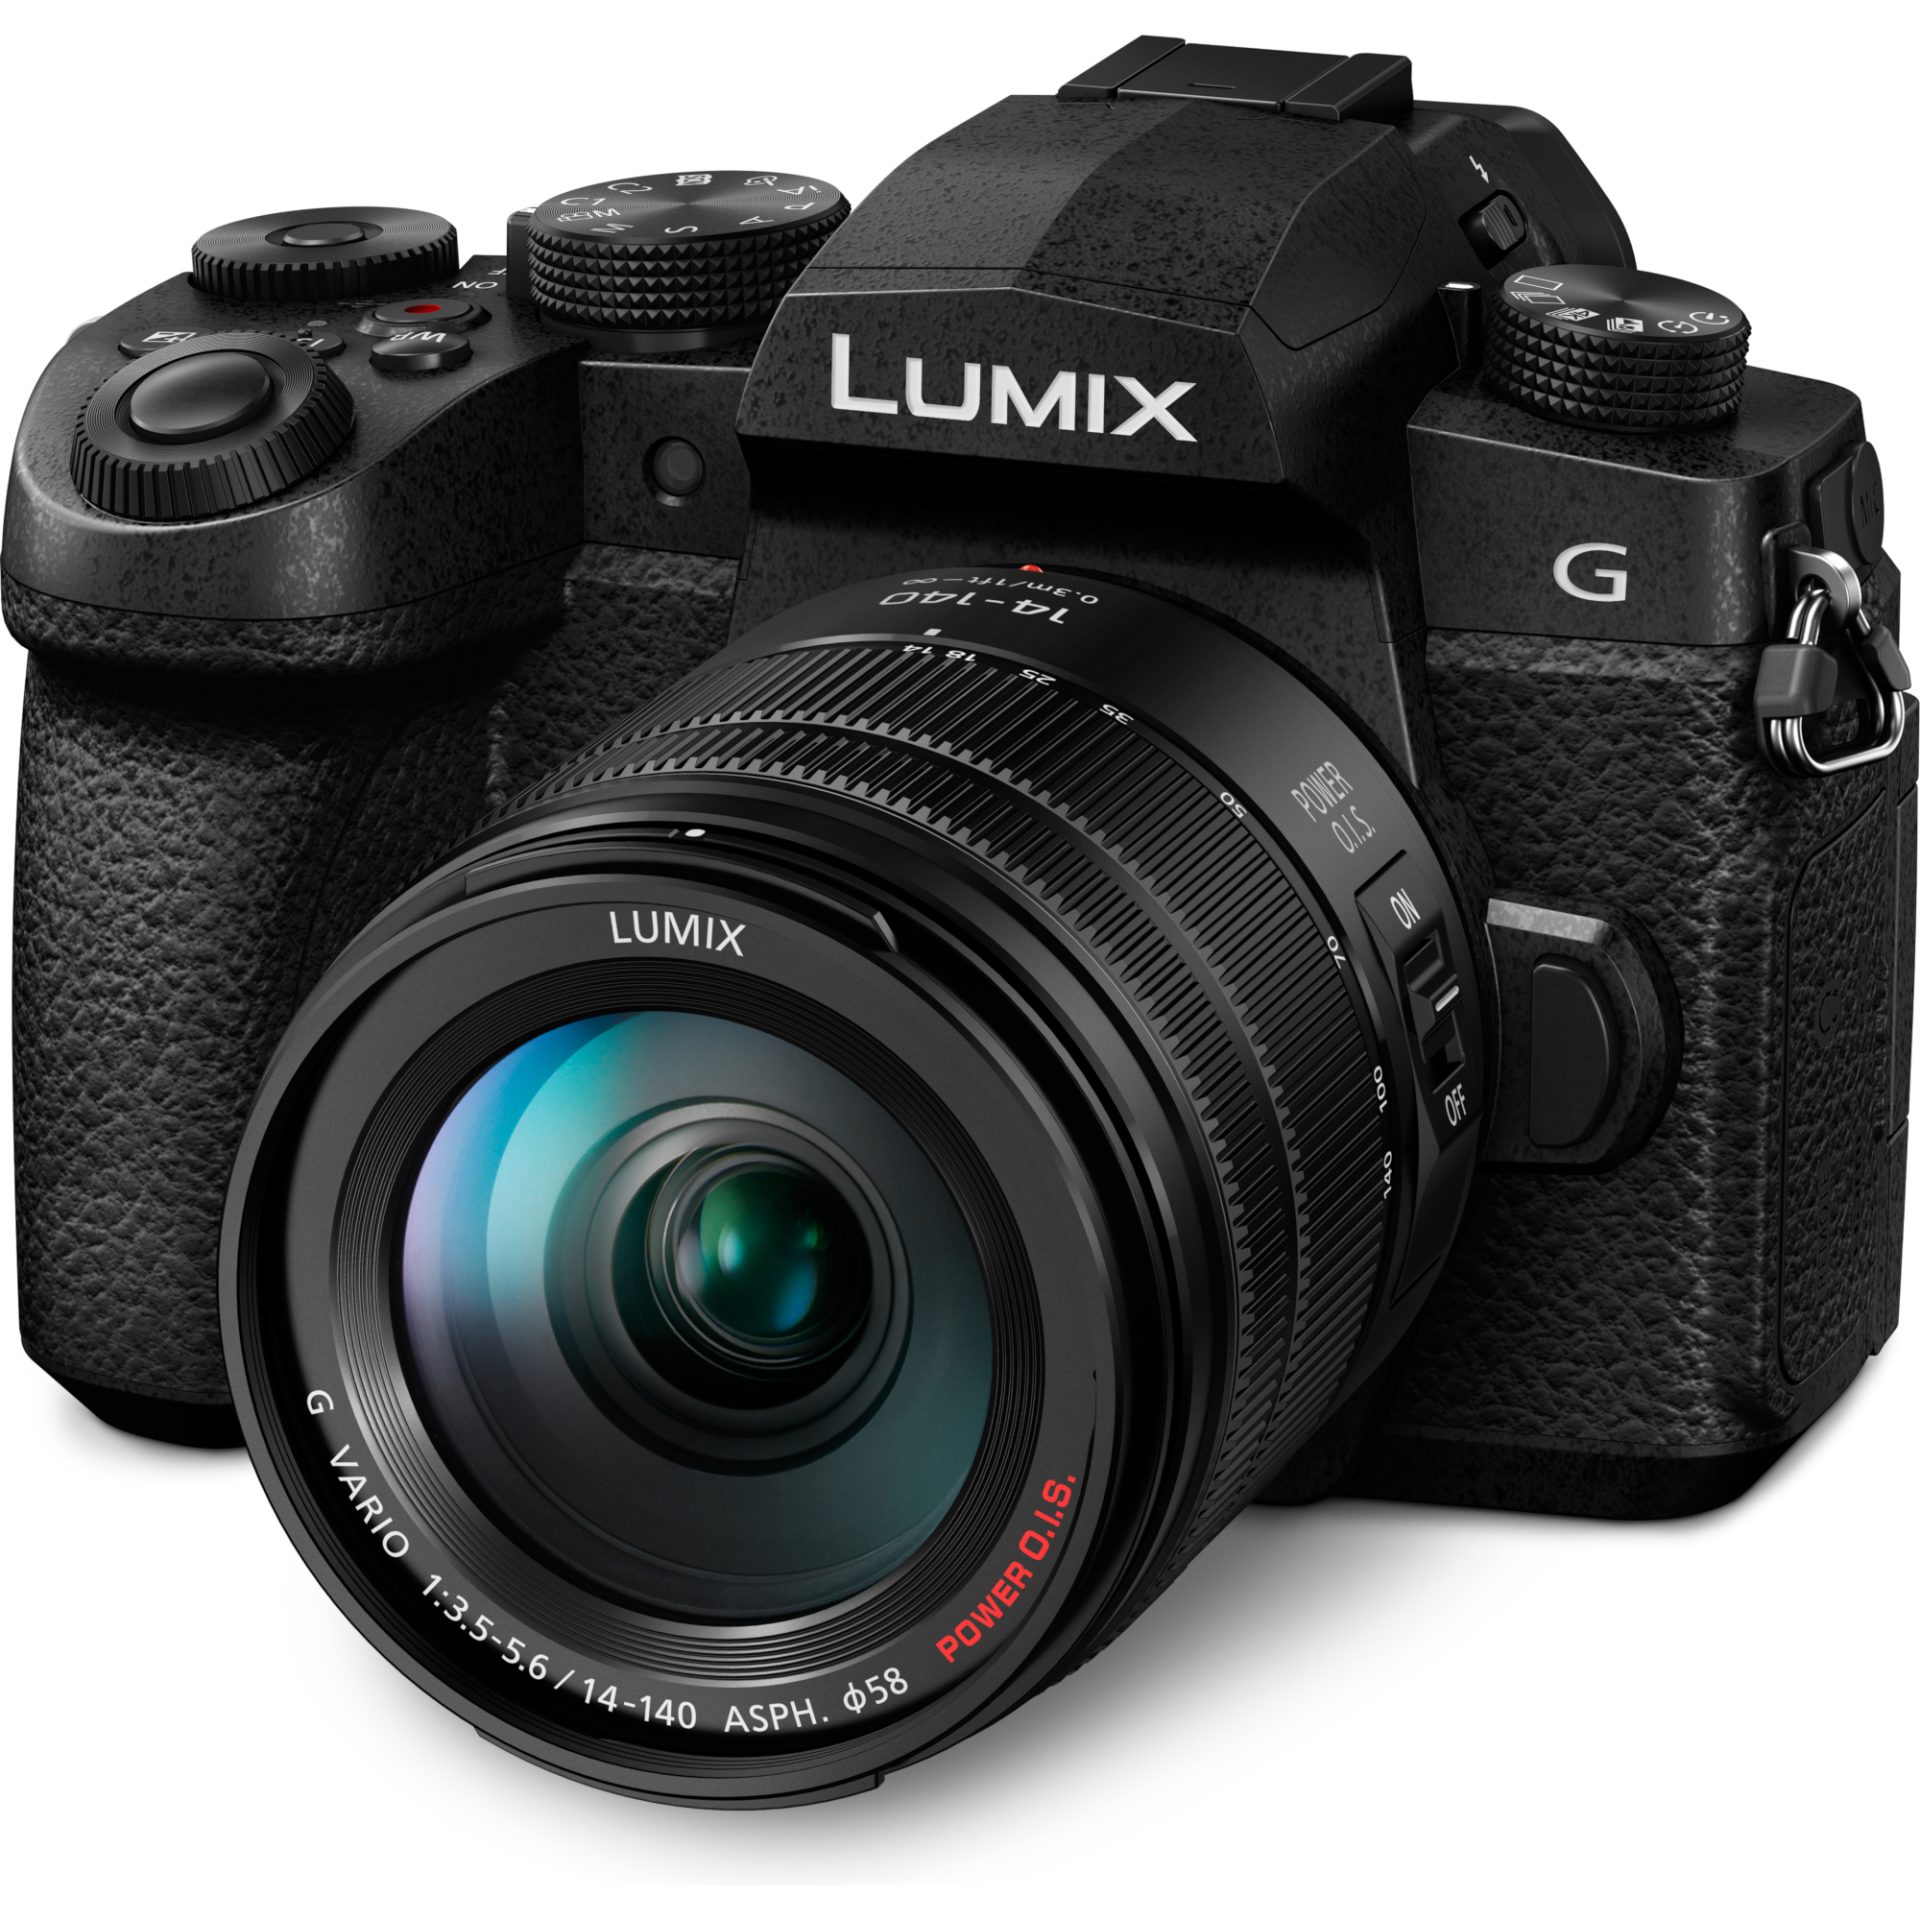 Panasonic DC-G90H Lumix bezzrcadlový digitální fotoaparát + objektiv H-FSA14140 14-140mm, F3.5-5.6 (Live MOS 20.3MP, 4K Video, V-LogL, Dual I.S. 2), Č